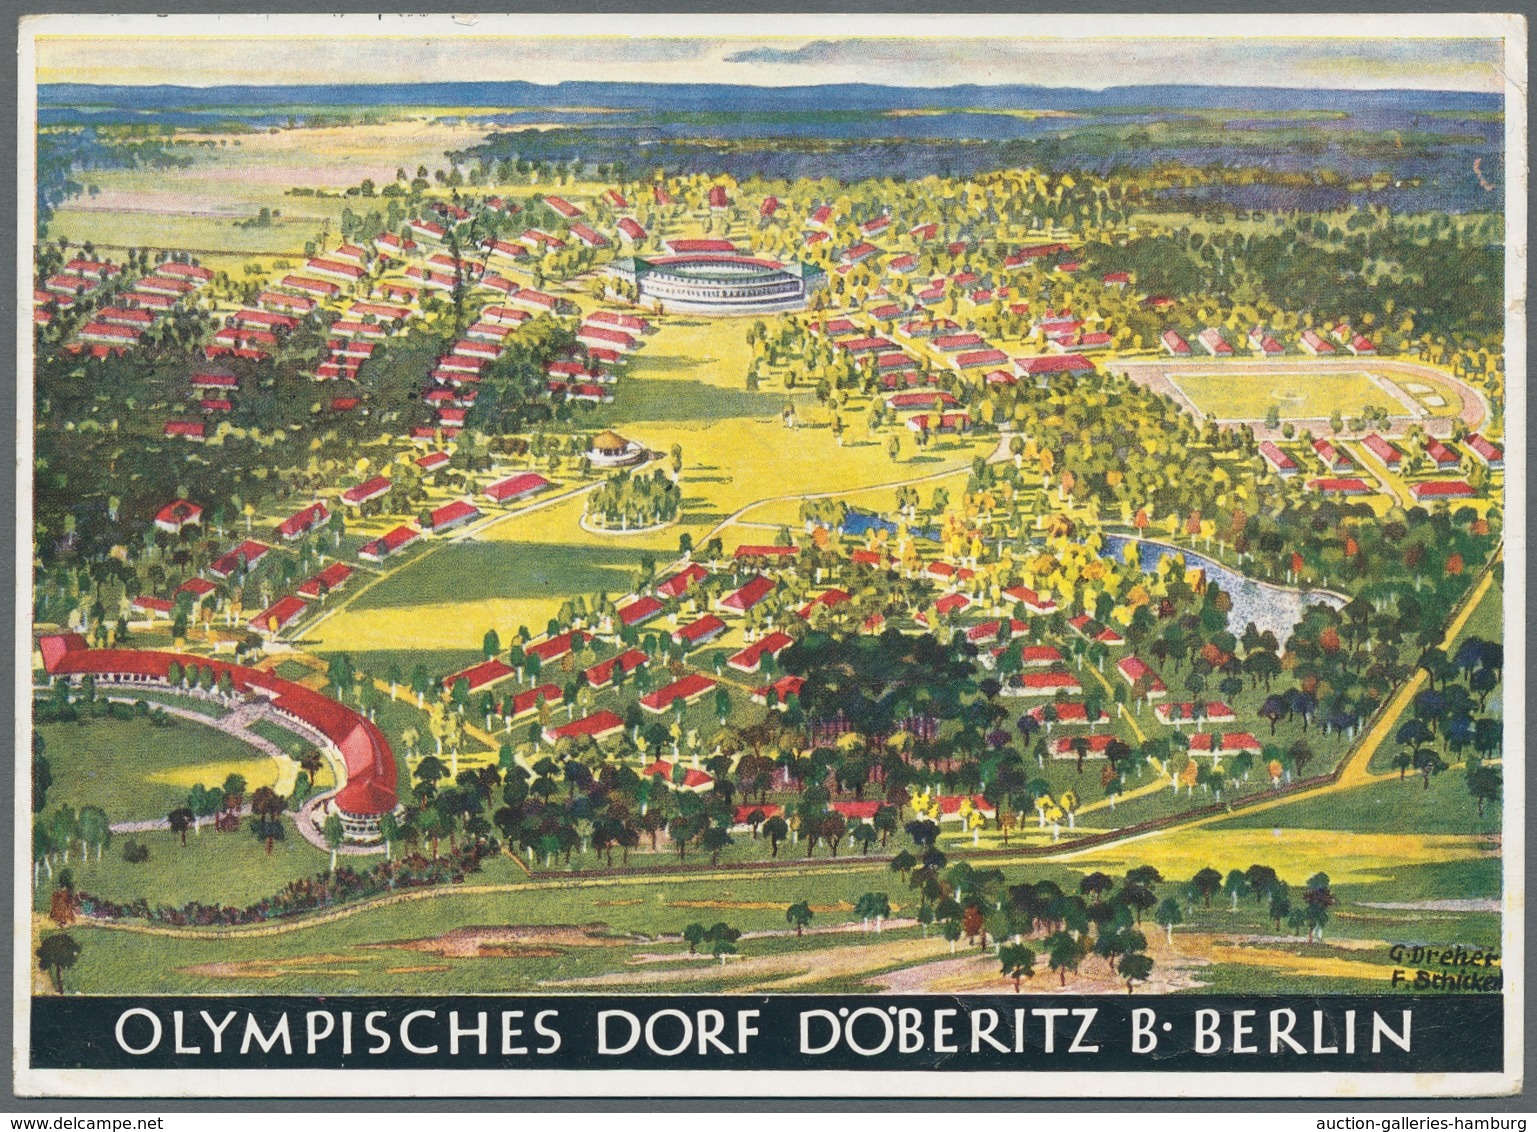 Thematik: Olympische Spiele / olympic games: 1936, "OLYMPISCHES DORF", Partie von fünf Ansichtskarte